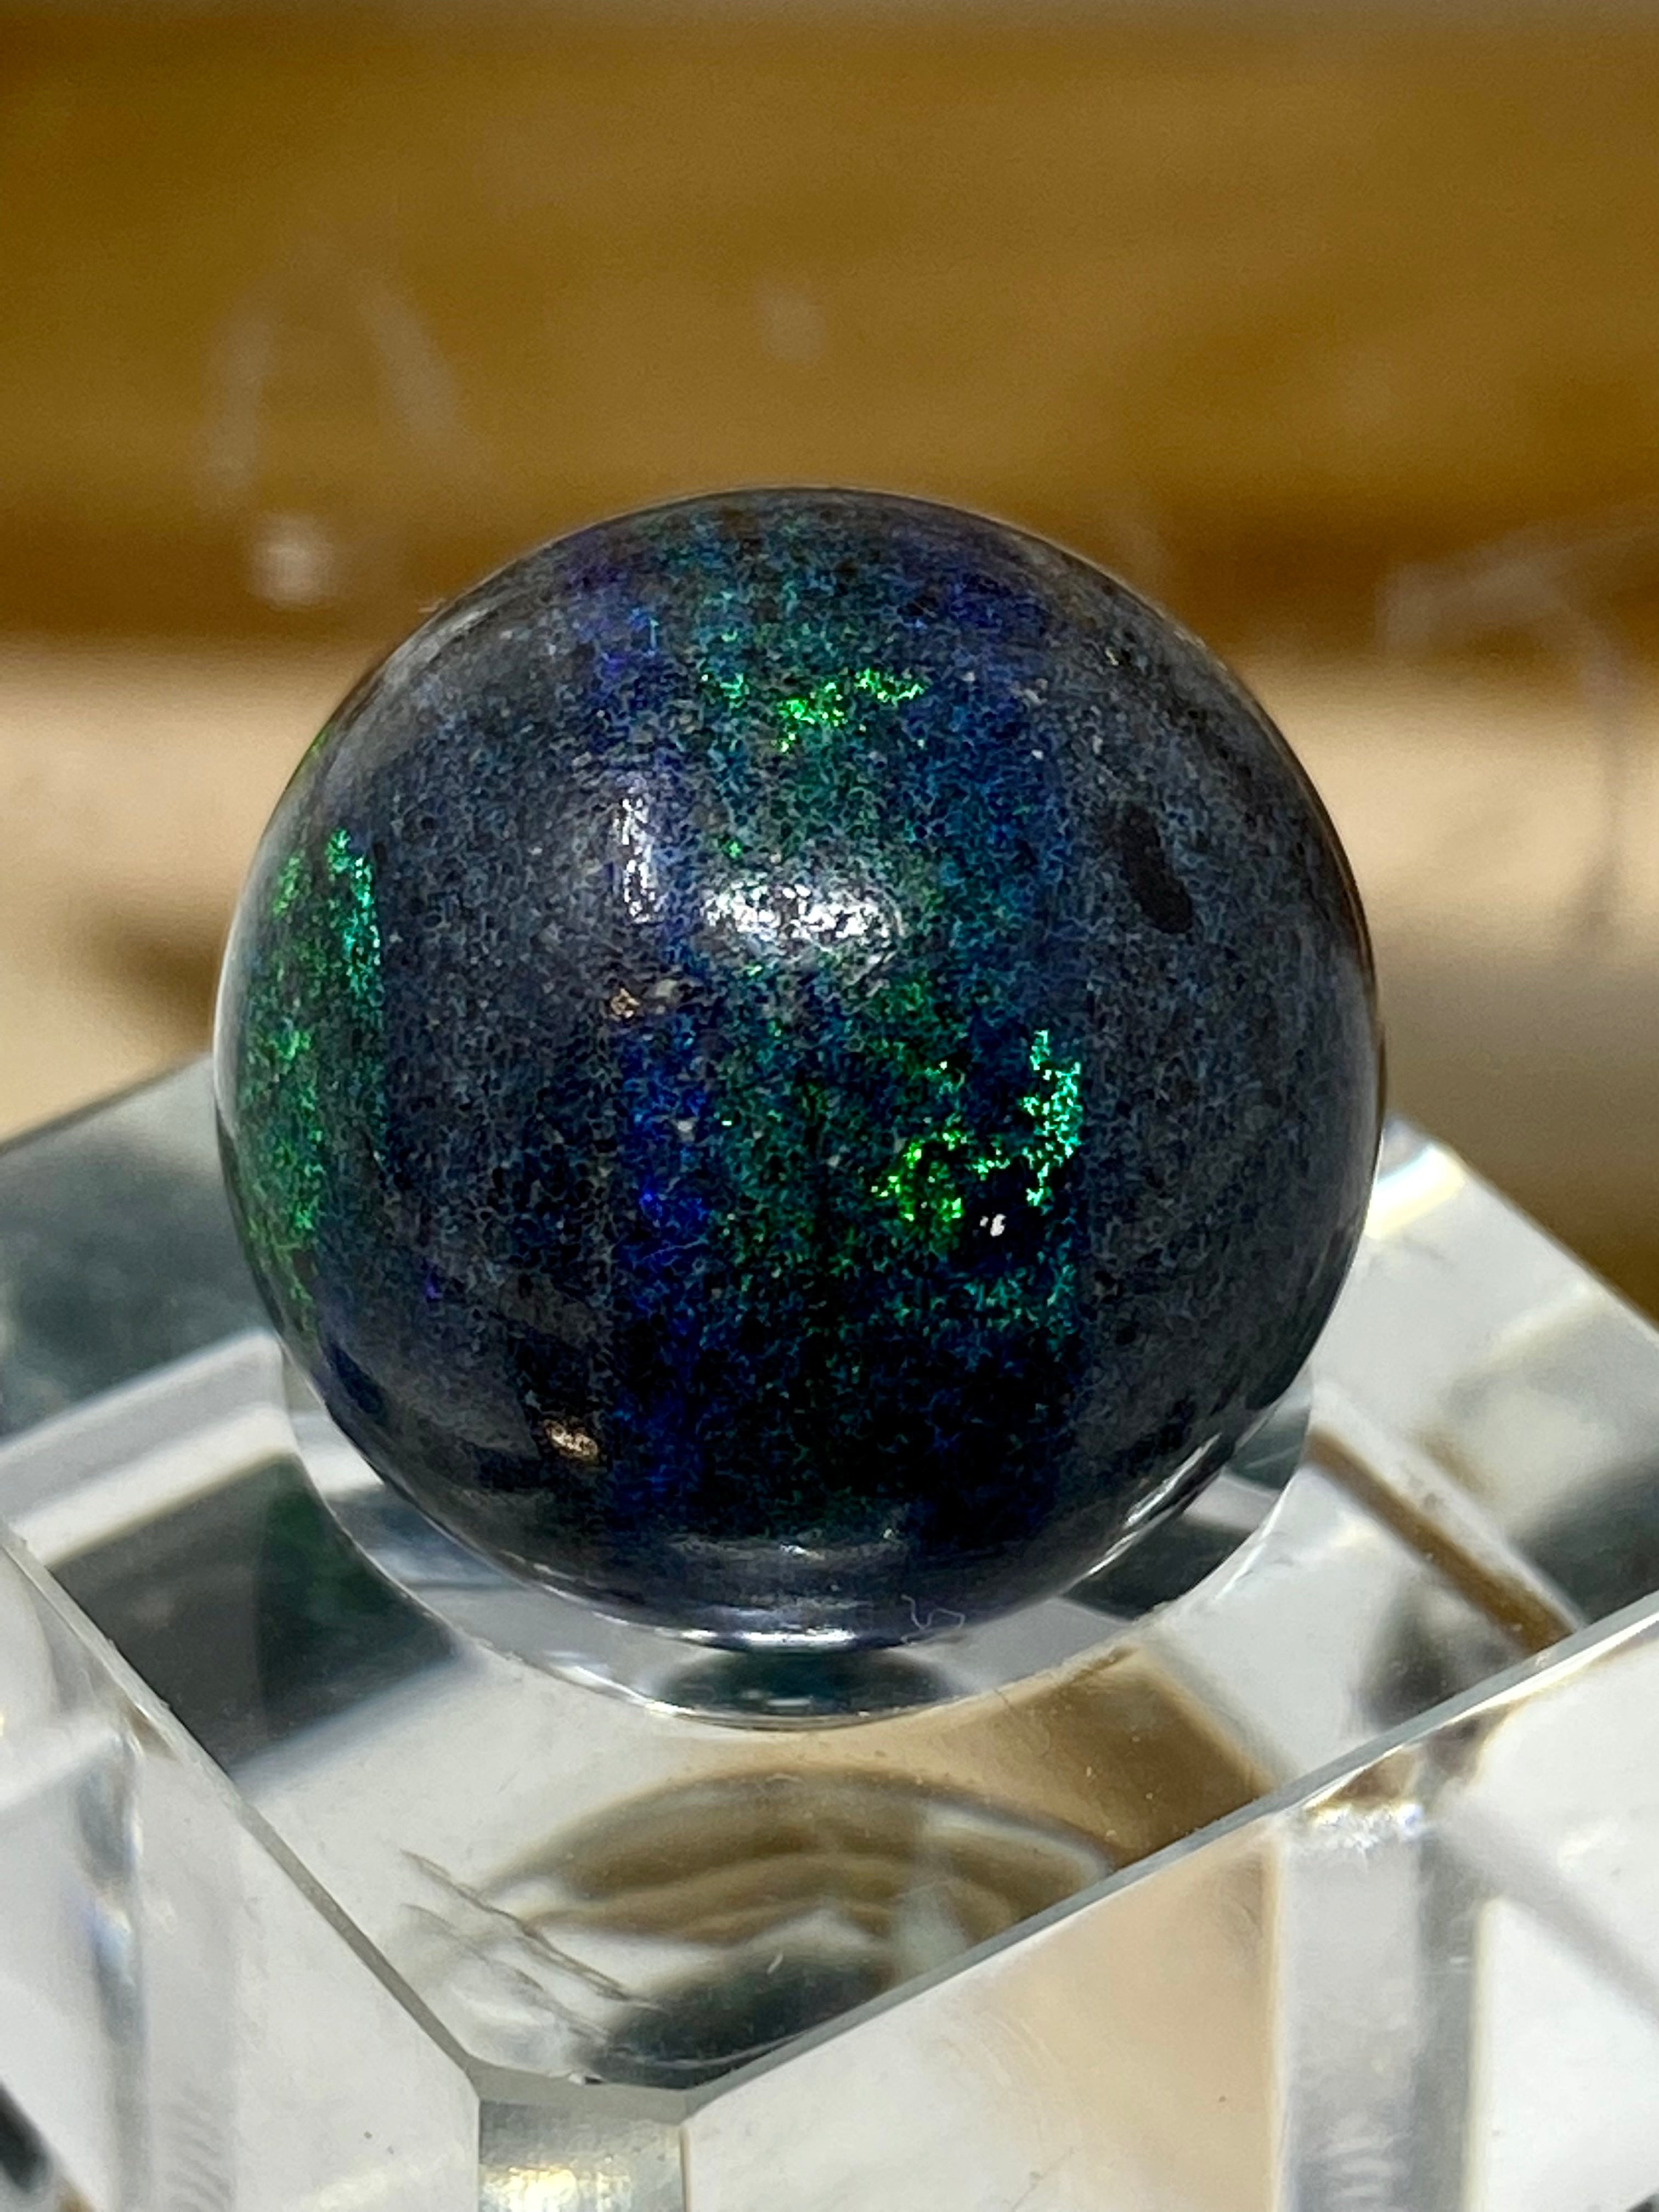 Boulder Opal  (OPAL 51)